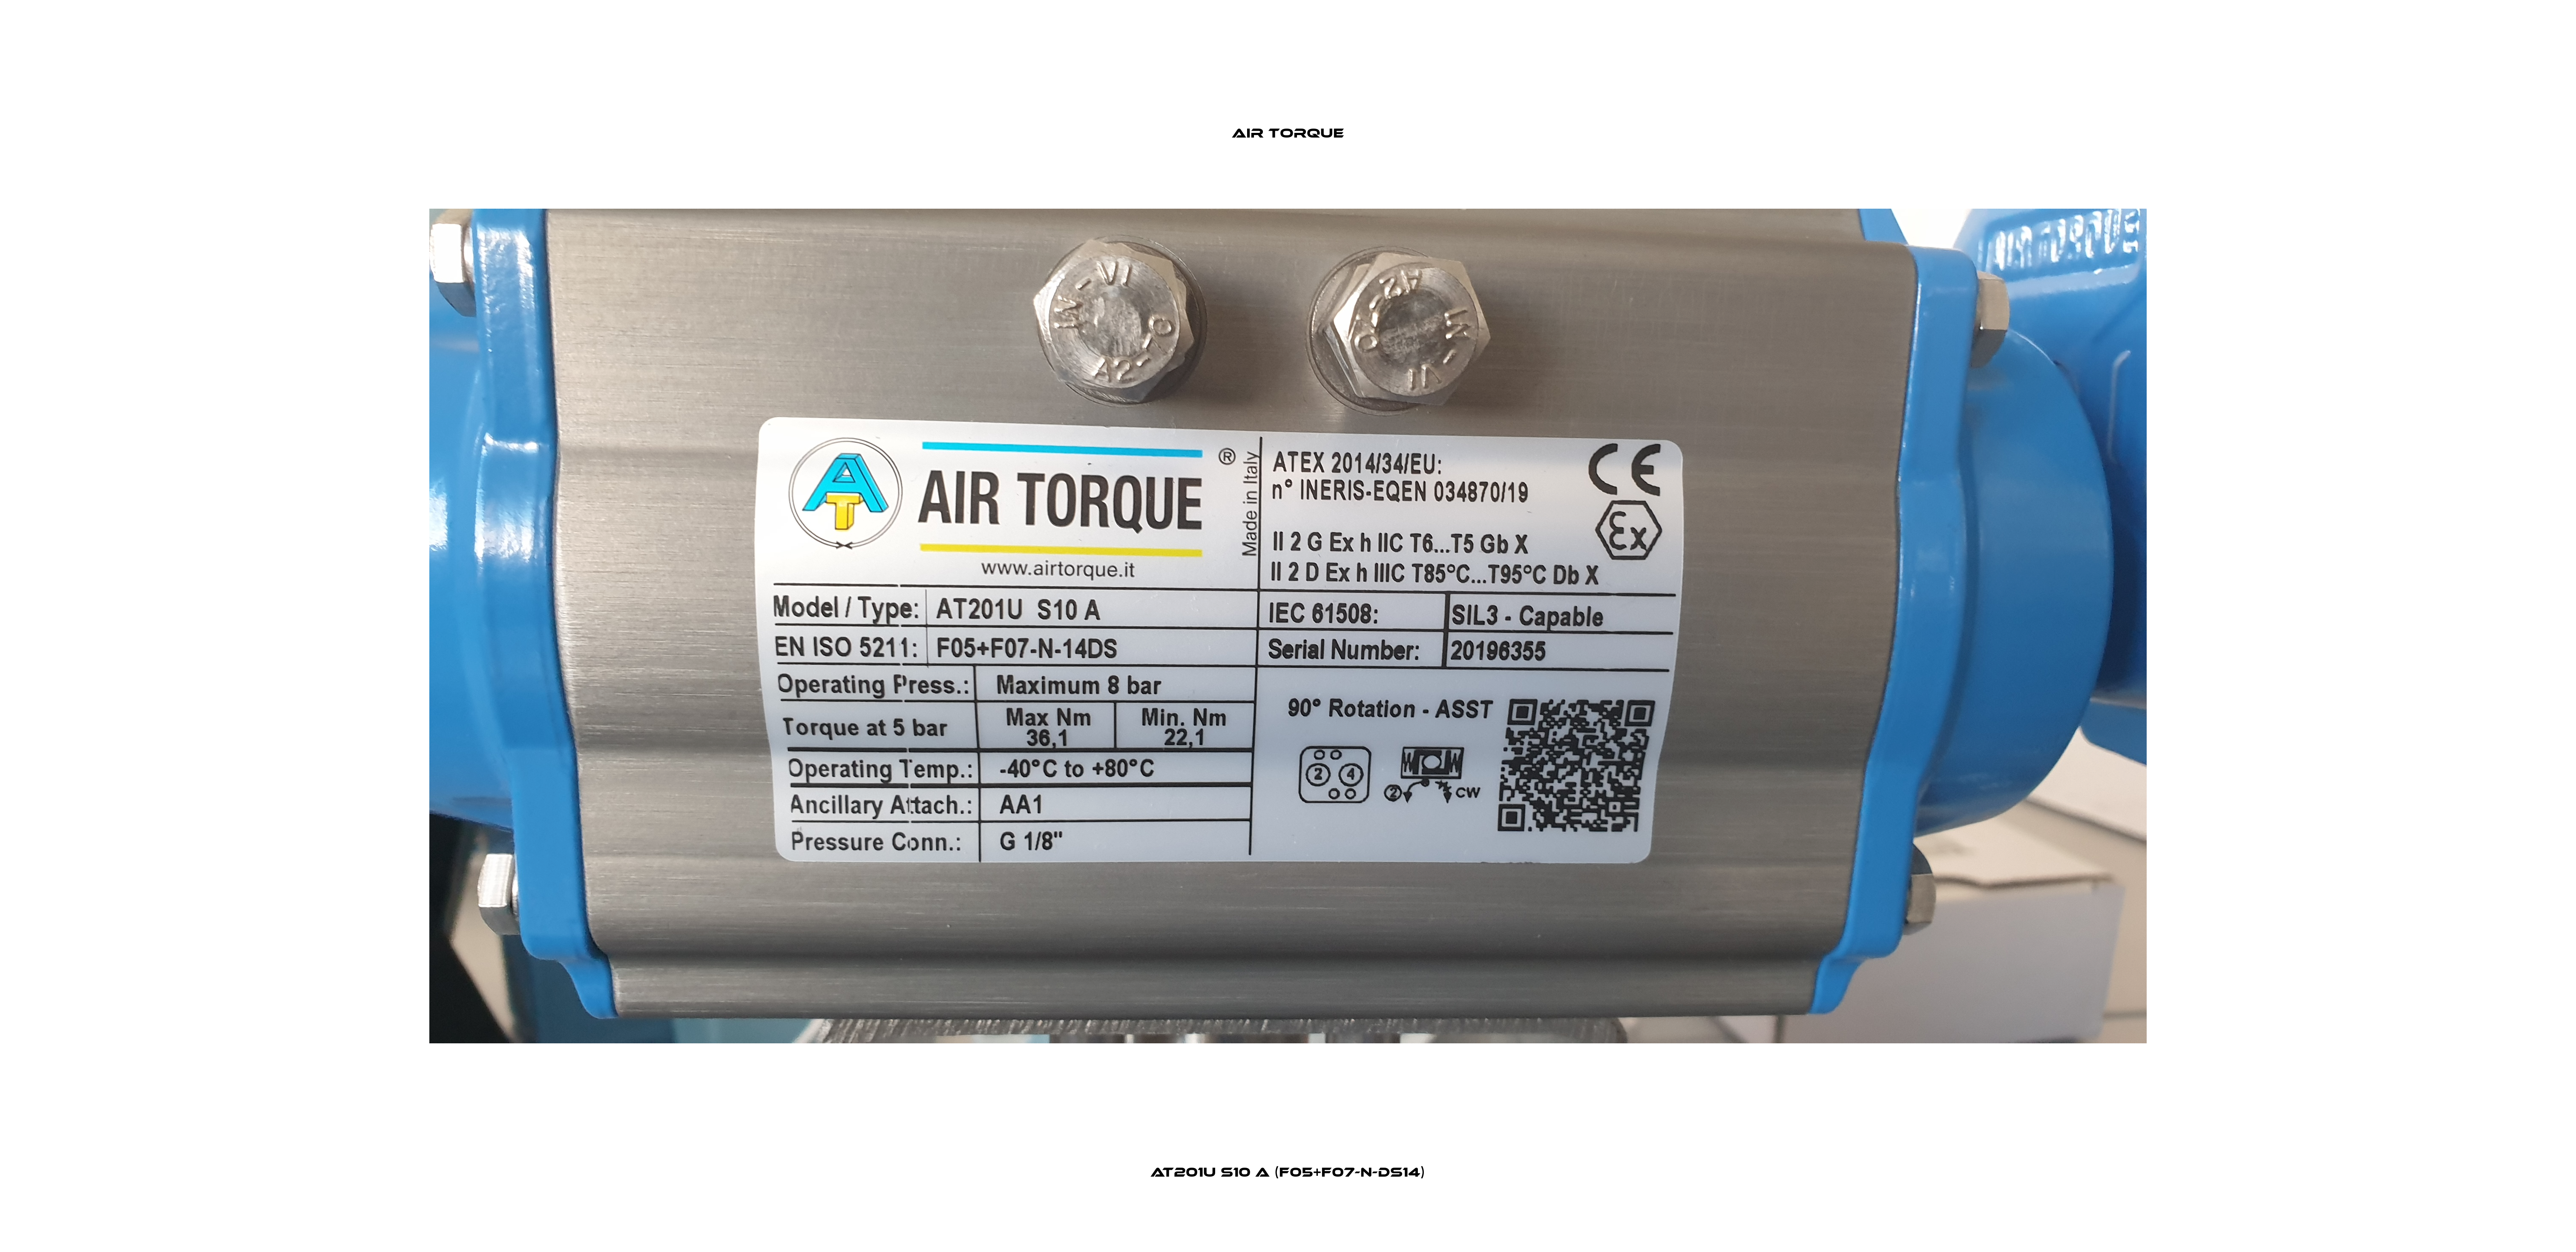 AT201U S10 A (F05+F07-N-DS14) Air Torque